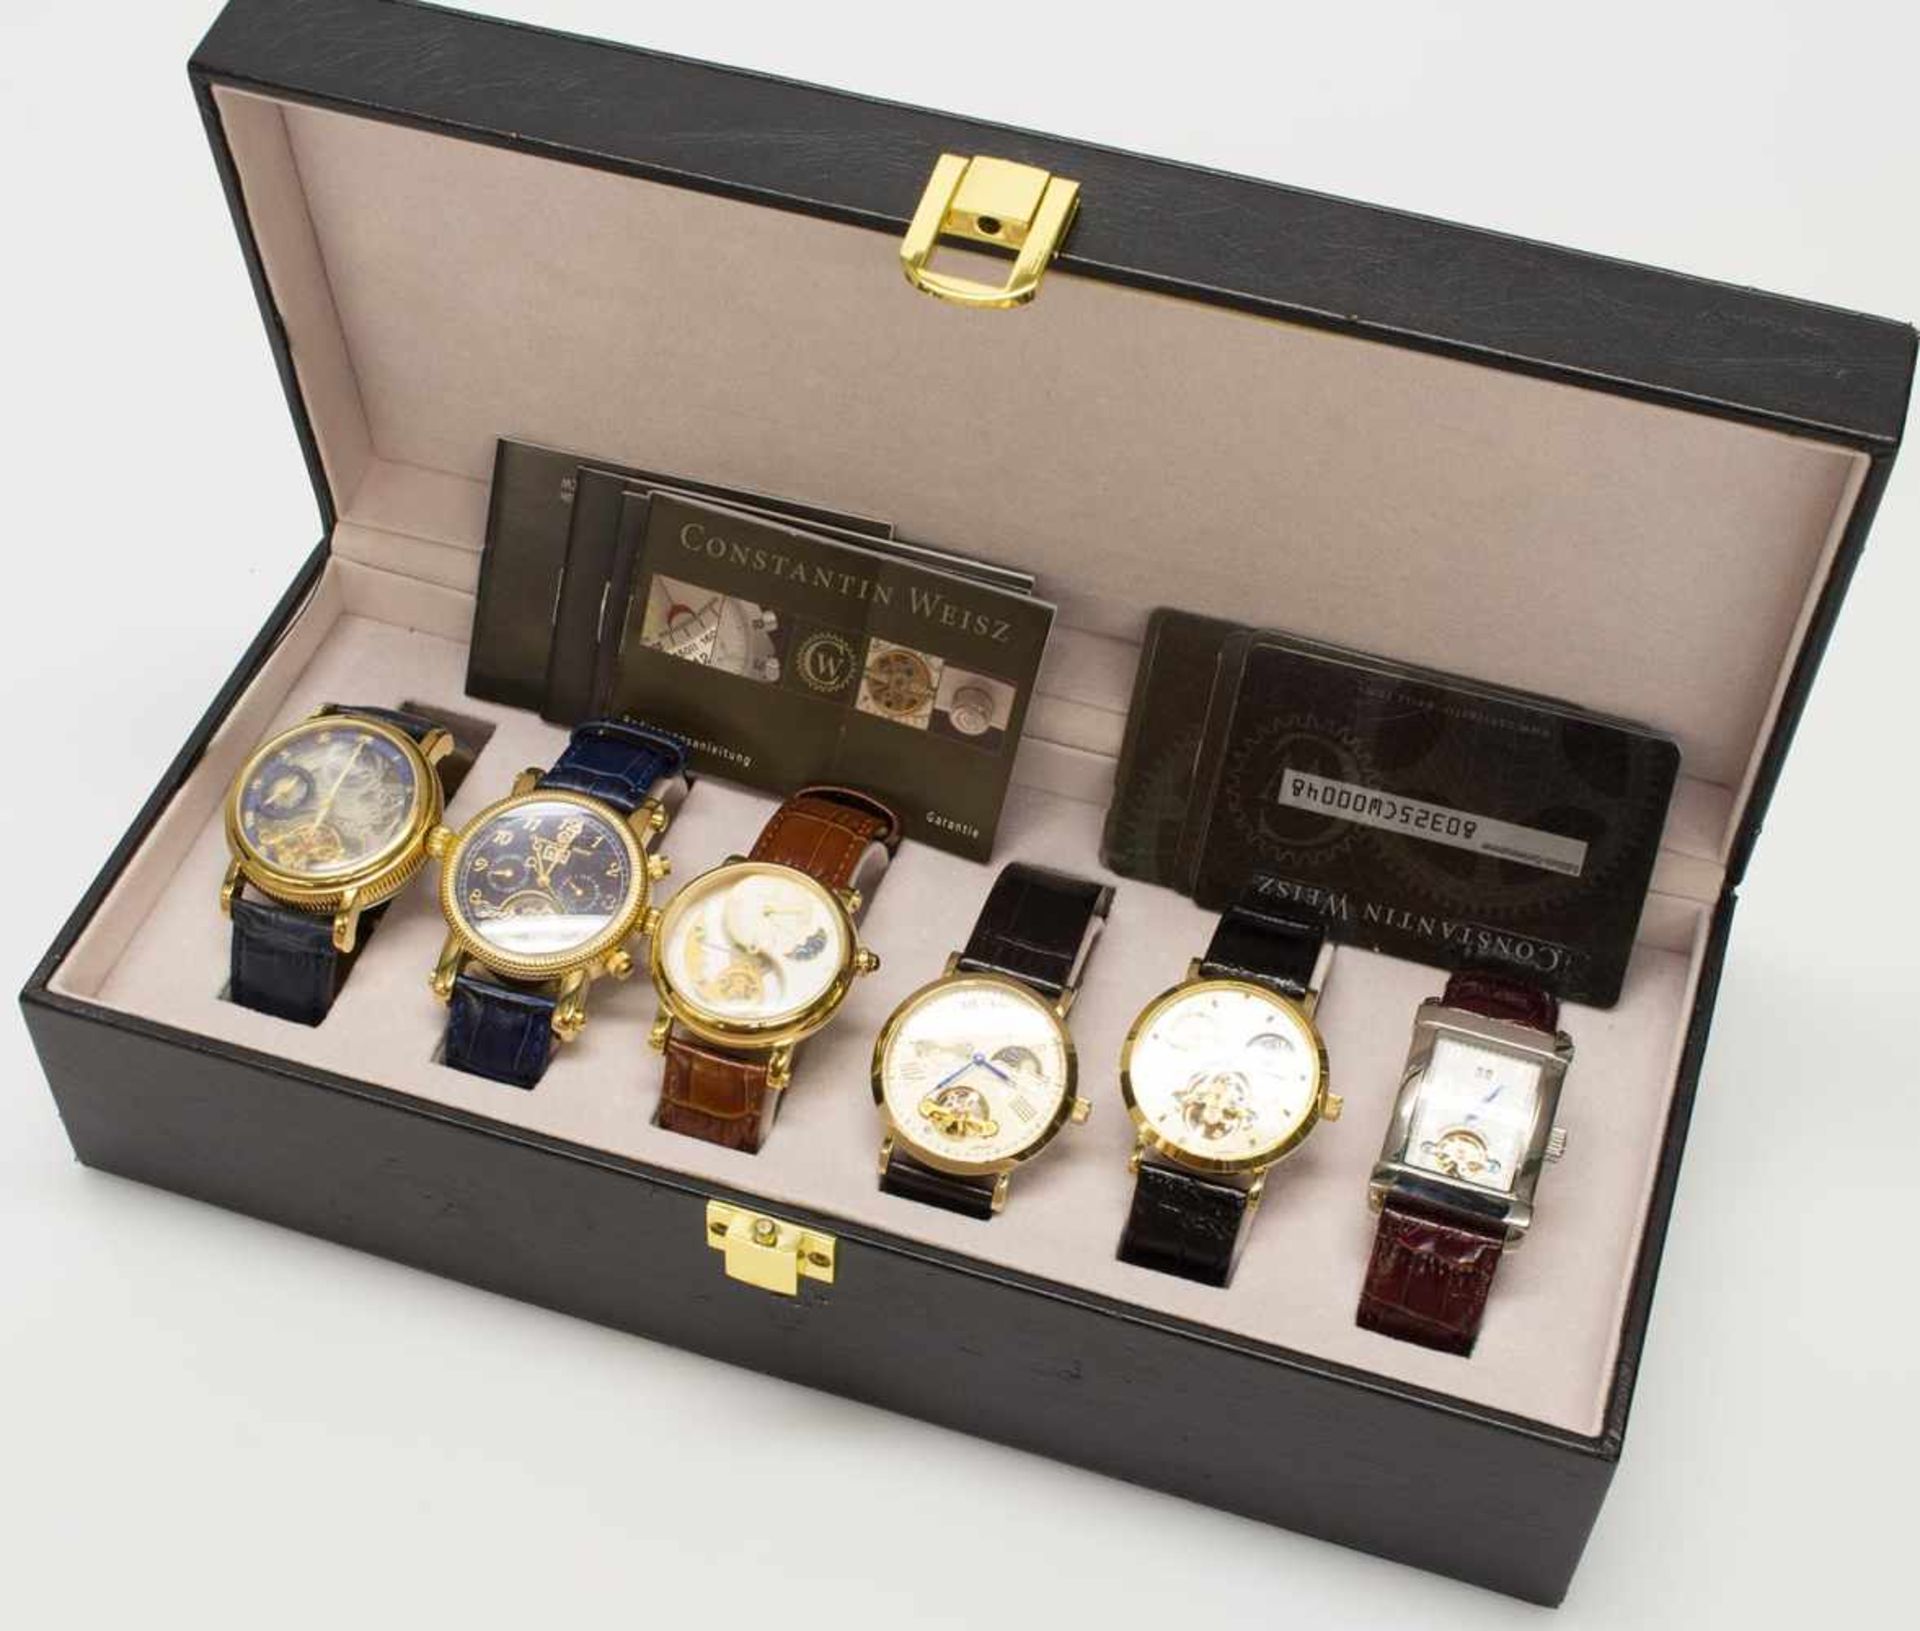 Uhrencollektion (6 HAU)Constantin Weisz, 6 Herrenarmbanduhren mit Automaticwerk, z.T. mit